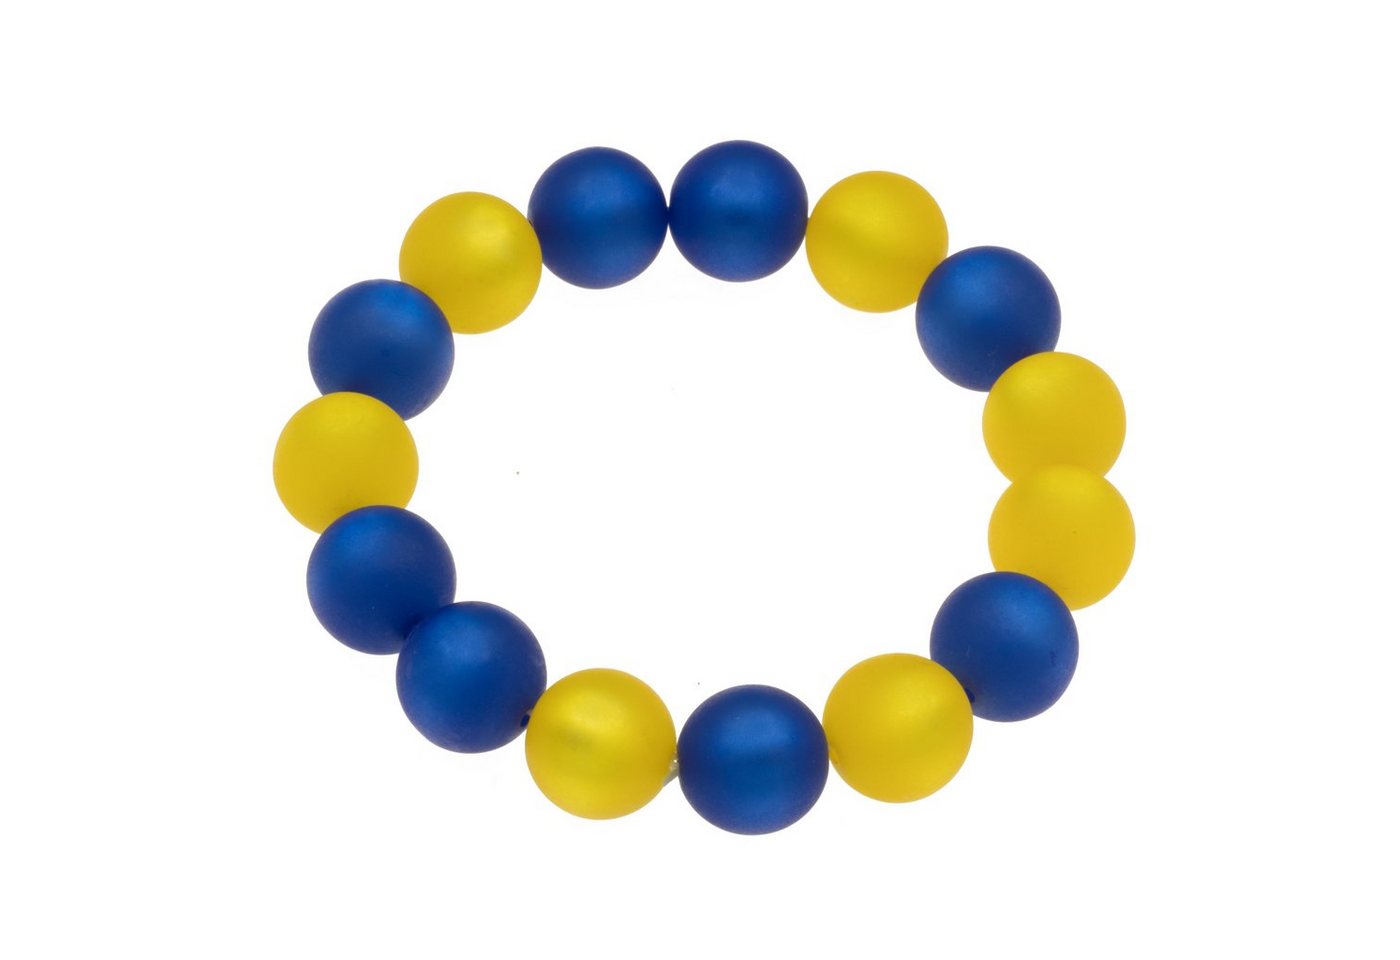 Bella Carina Armband Ukraine blau gelb, Polaris Perlen Armband 14 mm Perlen, blau gelb in der Farbe der Ukraine Flagge von Bella Carina